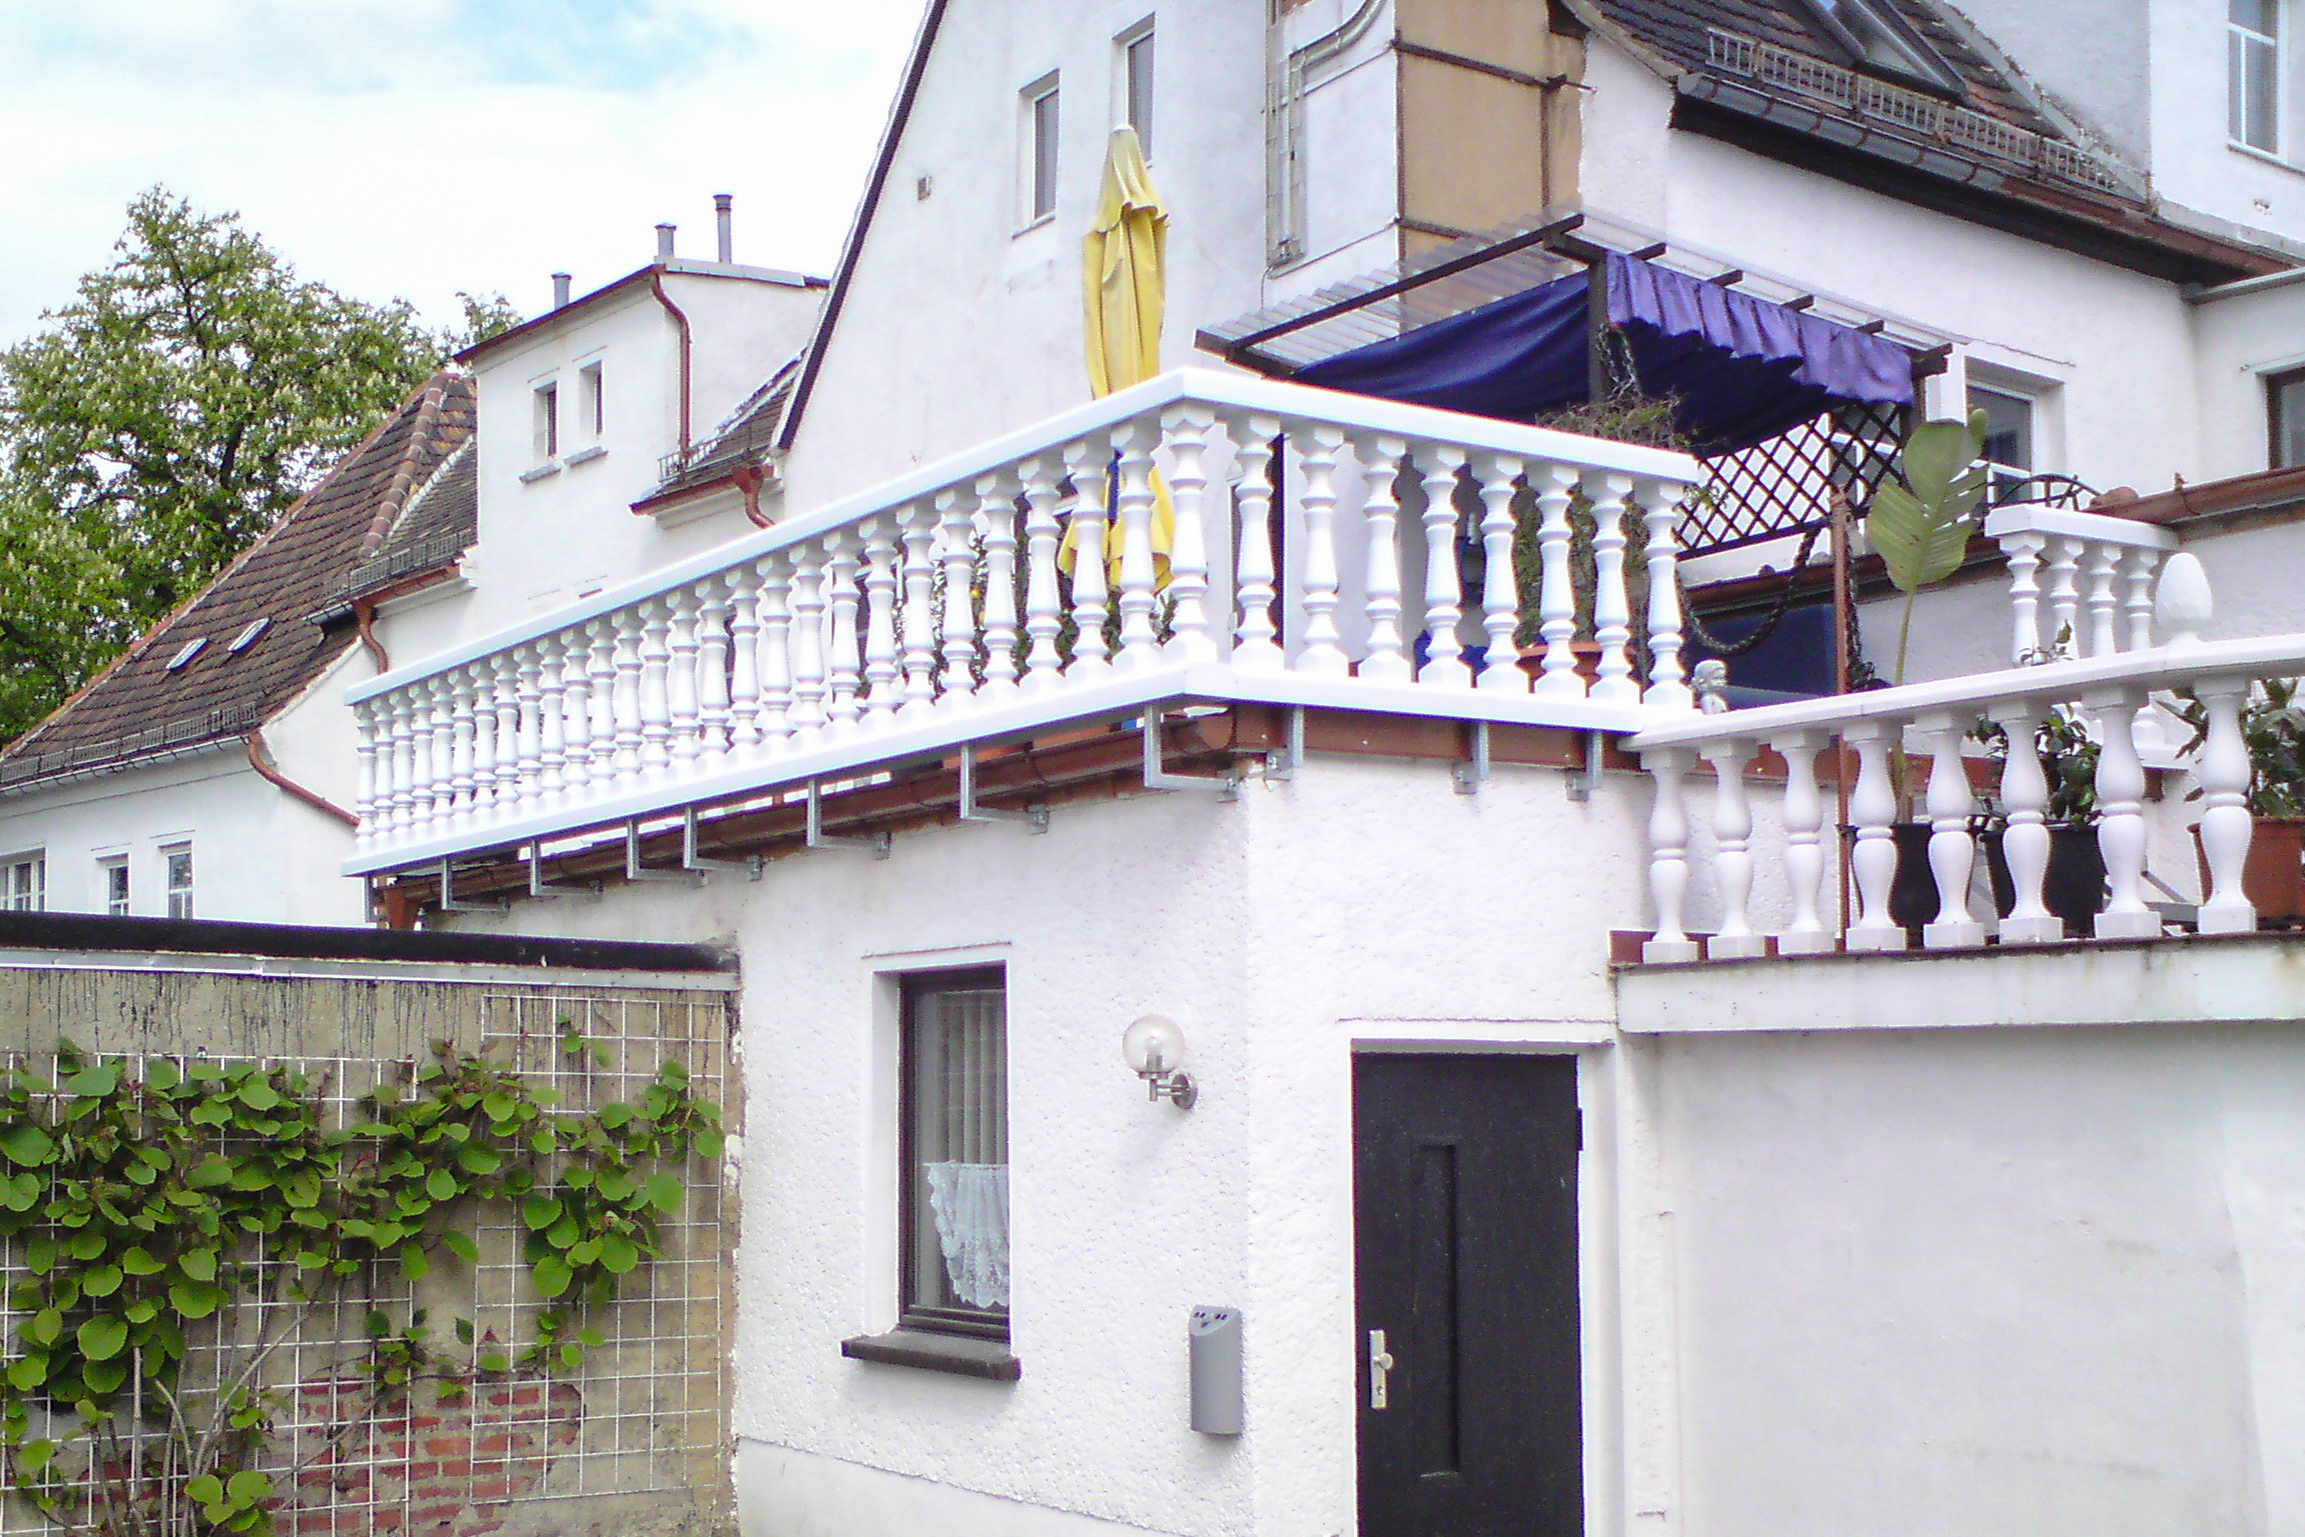 Balustrade aus PVC-Kunststoff in weiß als Terrasse